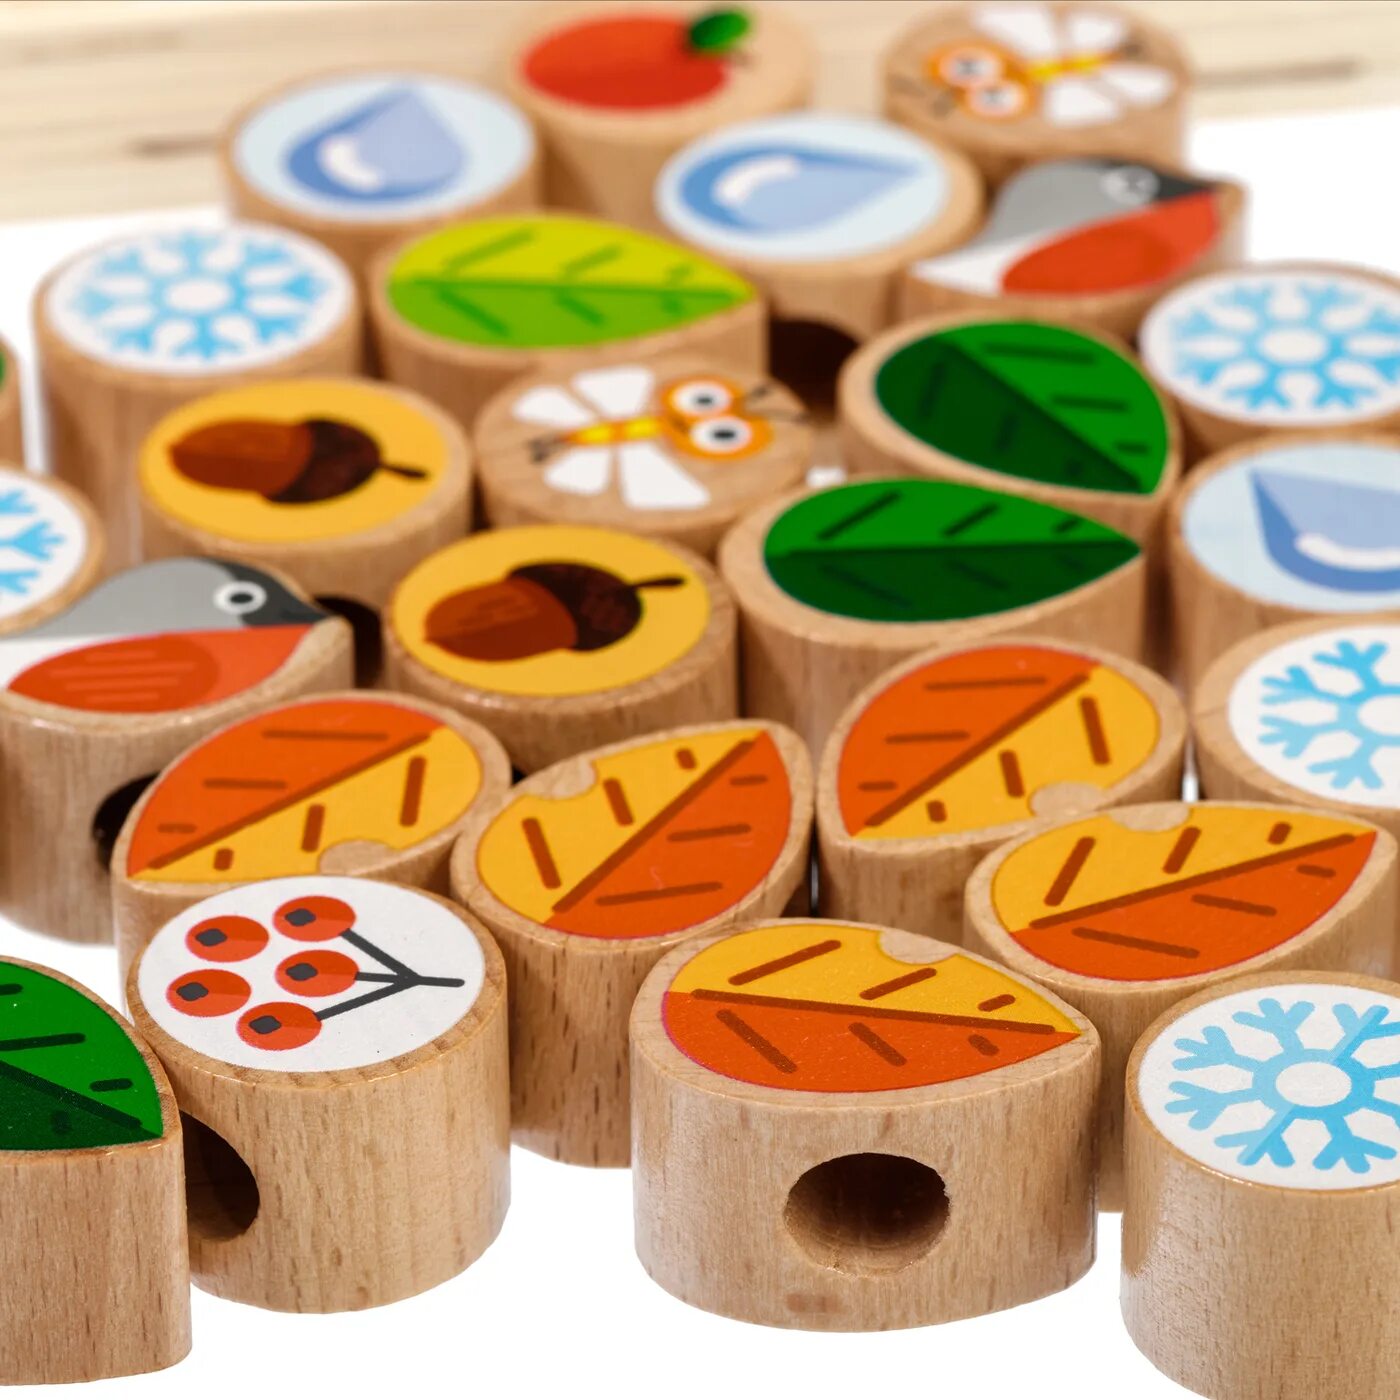 Wooden games. Дерево-шнуровка МДИ д104. Деревянные игрушки для малышей. Игрушка деревянная развивающая. Детские игрушки из дерева.